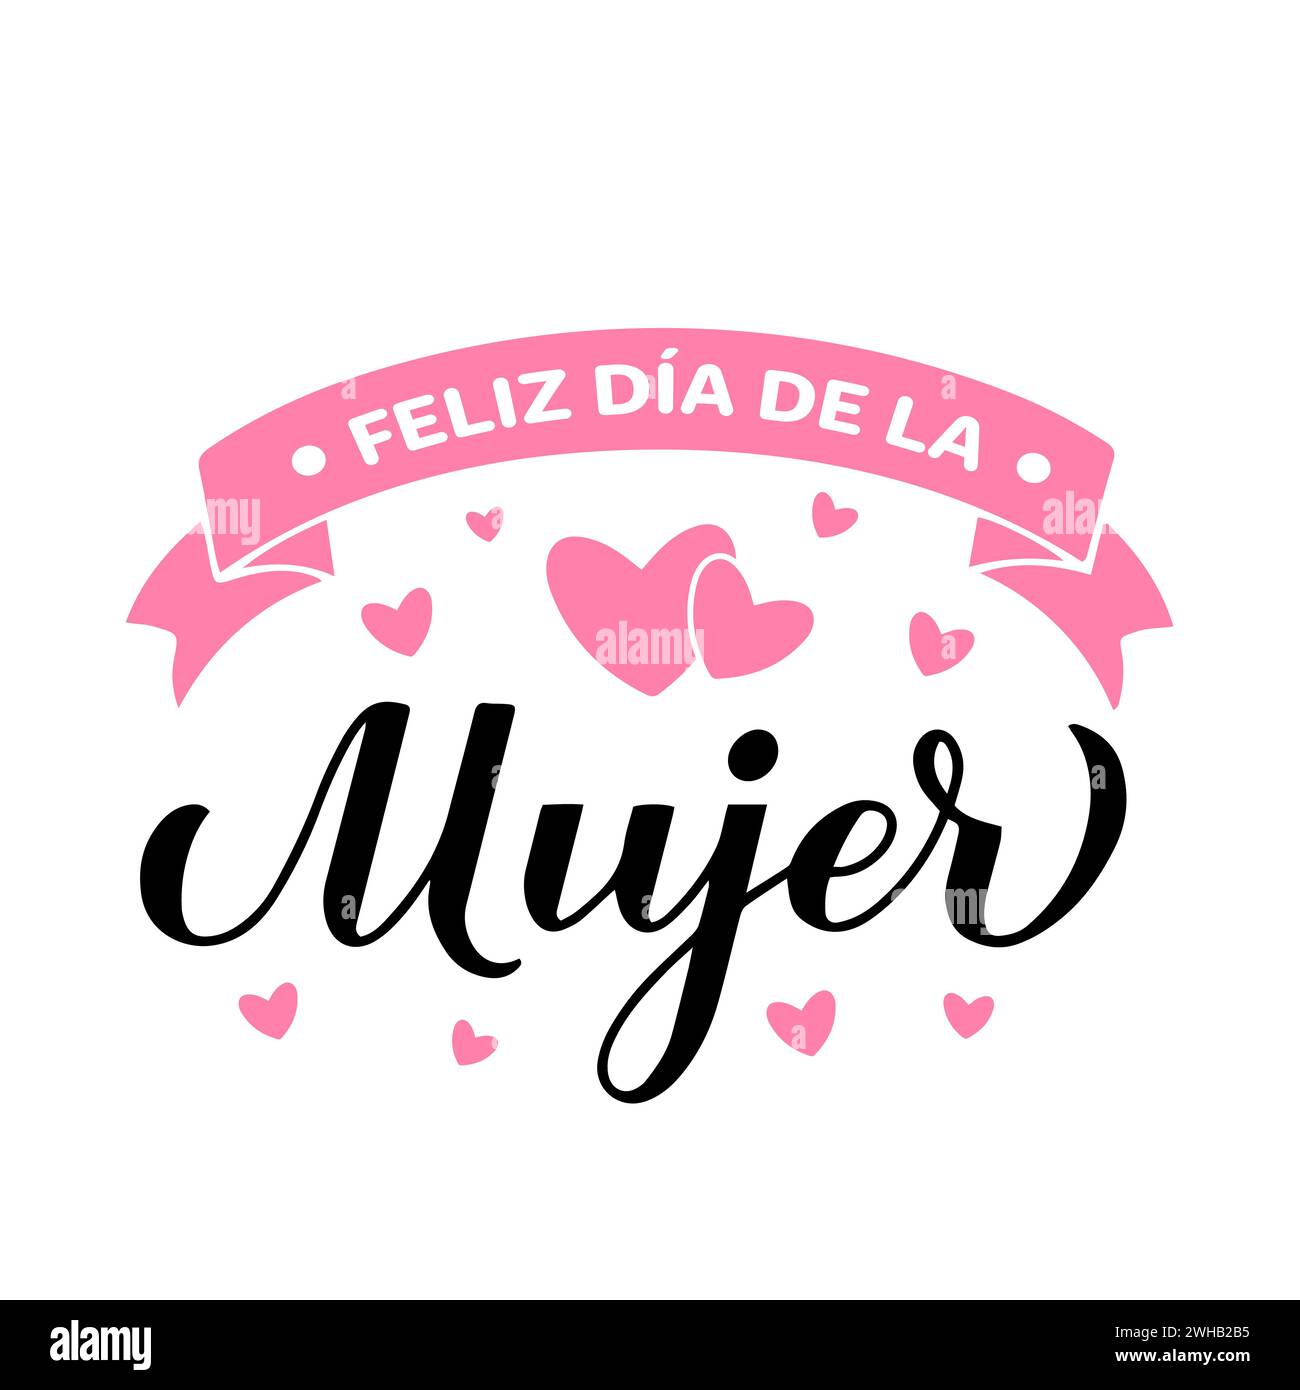 Feliz Dia de la Mujer - Happy Womens Day auf Spanisch. Kalligraphie-Handschrift isoliert auf weiß. Poster zur Typografie des Internationalen Frauentages. Vektor Stock Vektor